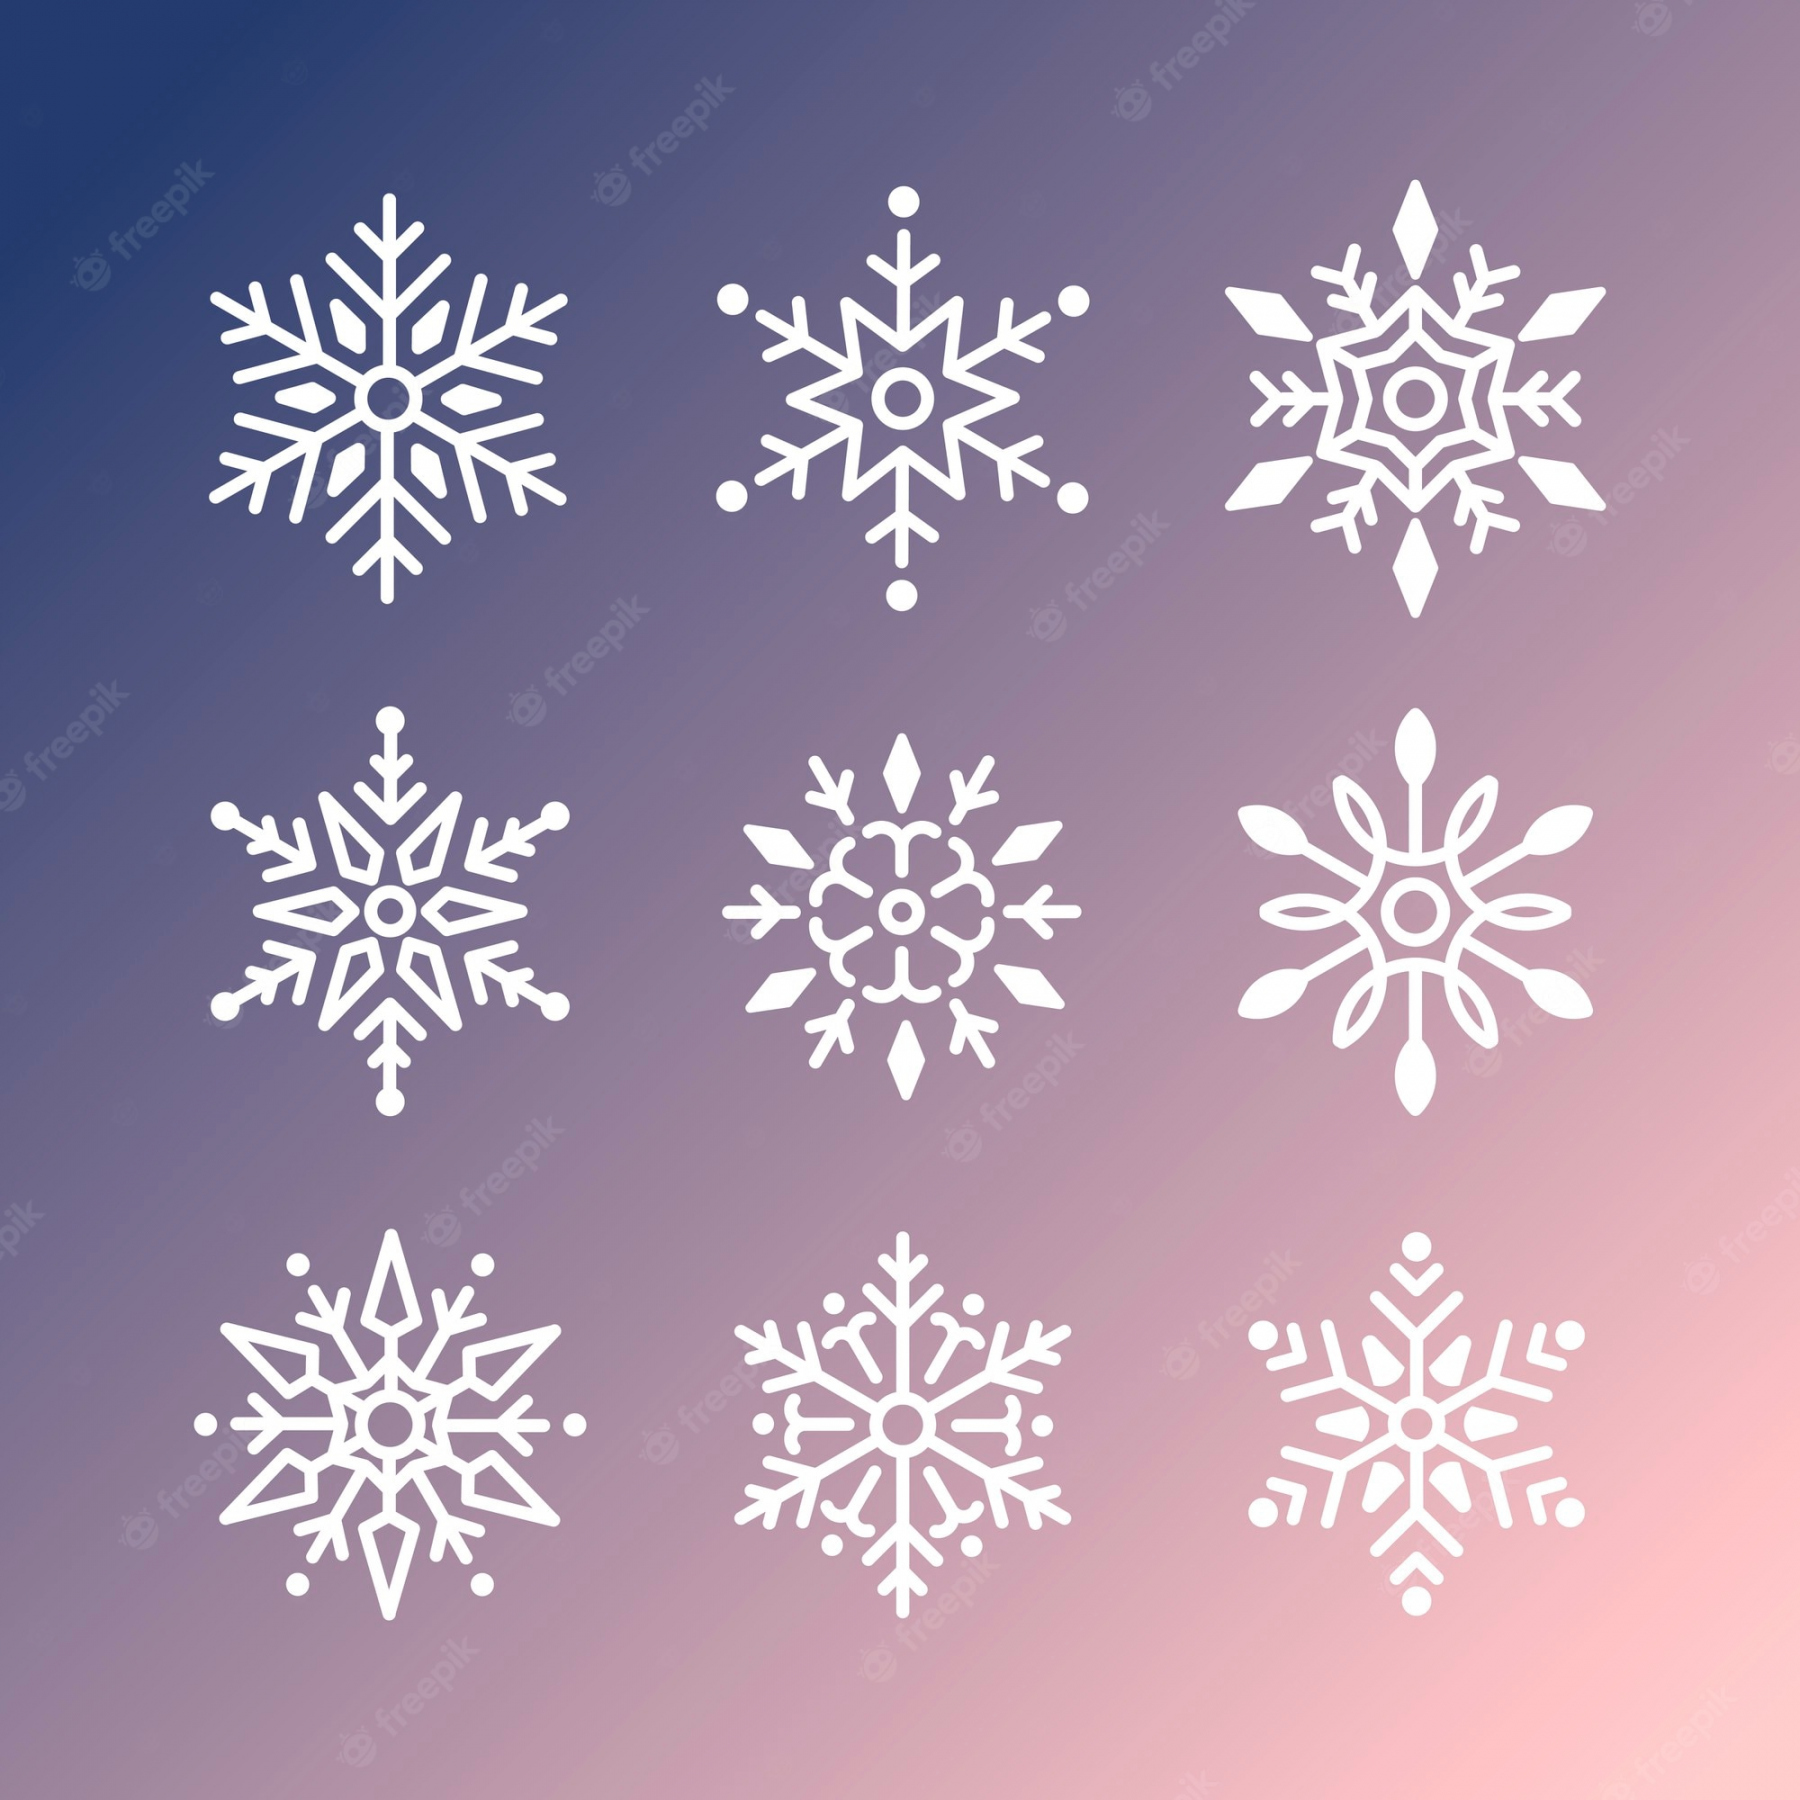 Page   Christmas Snowflakes Images - Free Download on Freepik - FREE Printables - Snowflake Design